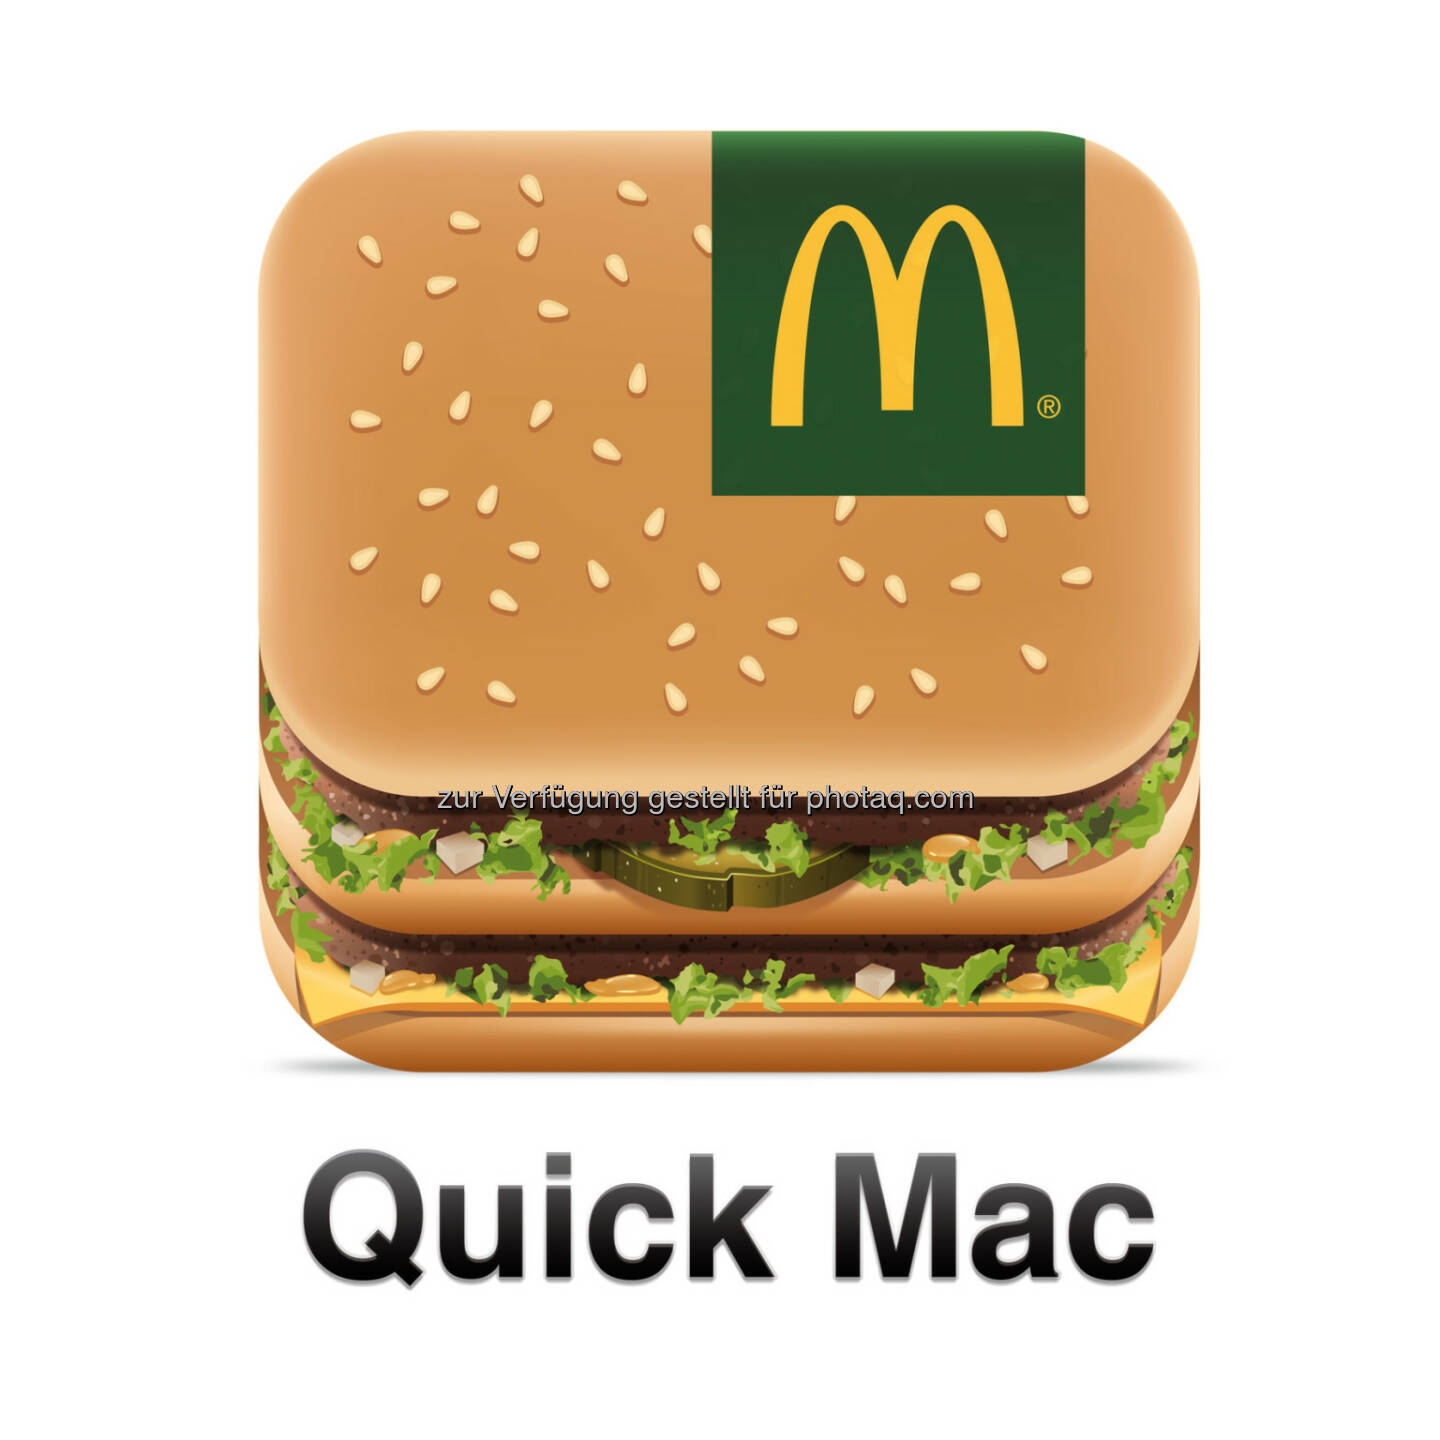 McDonald's Österreich launcht mobile Bestell-App -Mit der kostenlosen App Quick Mac ist erstmals mobiles Bestellen und Bezahlen möglich. Gäste können ihre Bestellung via Smartphone von unterwegs aufgebenund kurze Zeit darauf die frisch zubereiteten Produkte im ausgewählten Restaurant abholen oder vor Ort genießen. (Bild: McDonald's)